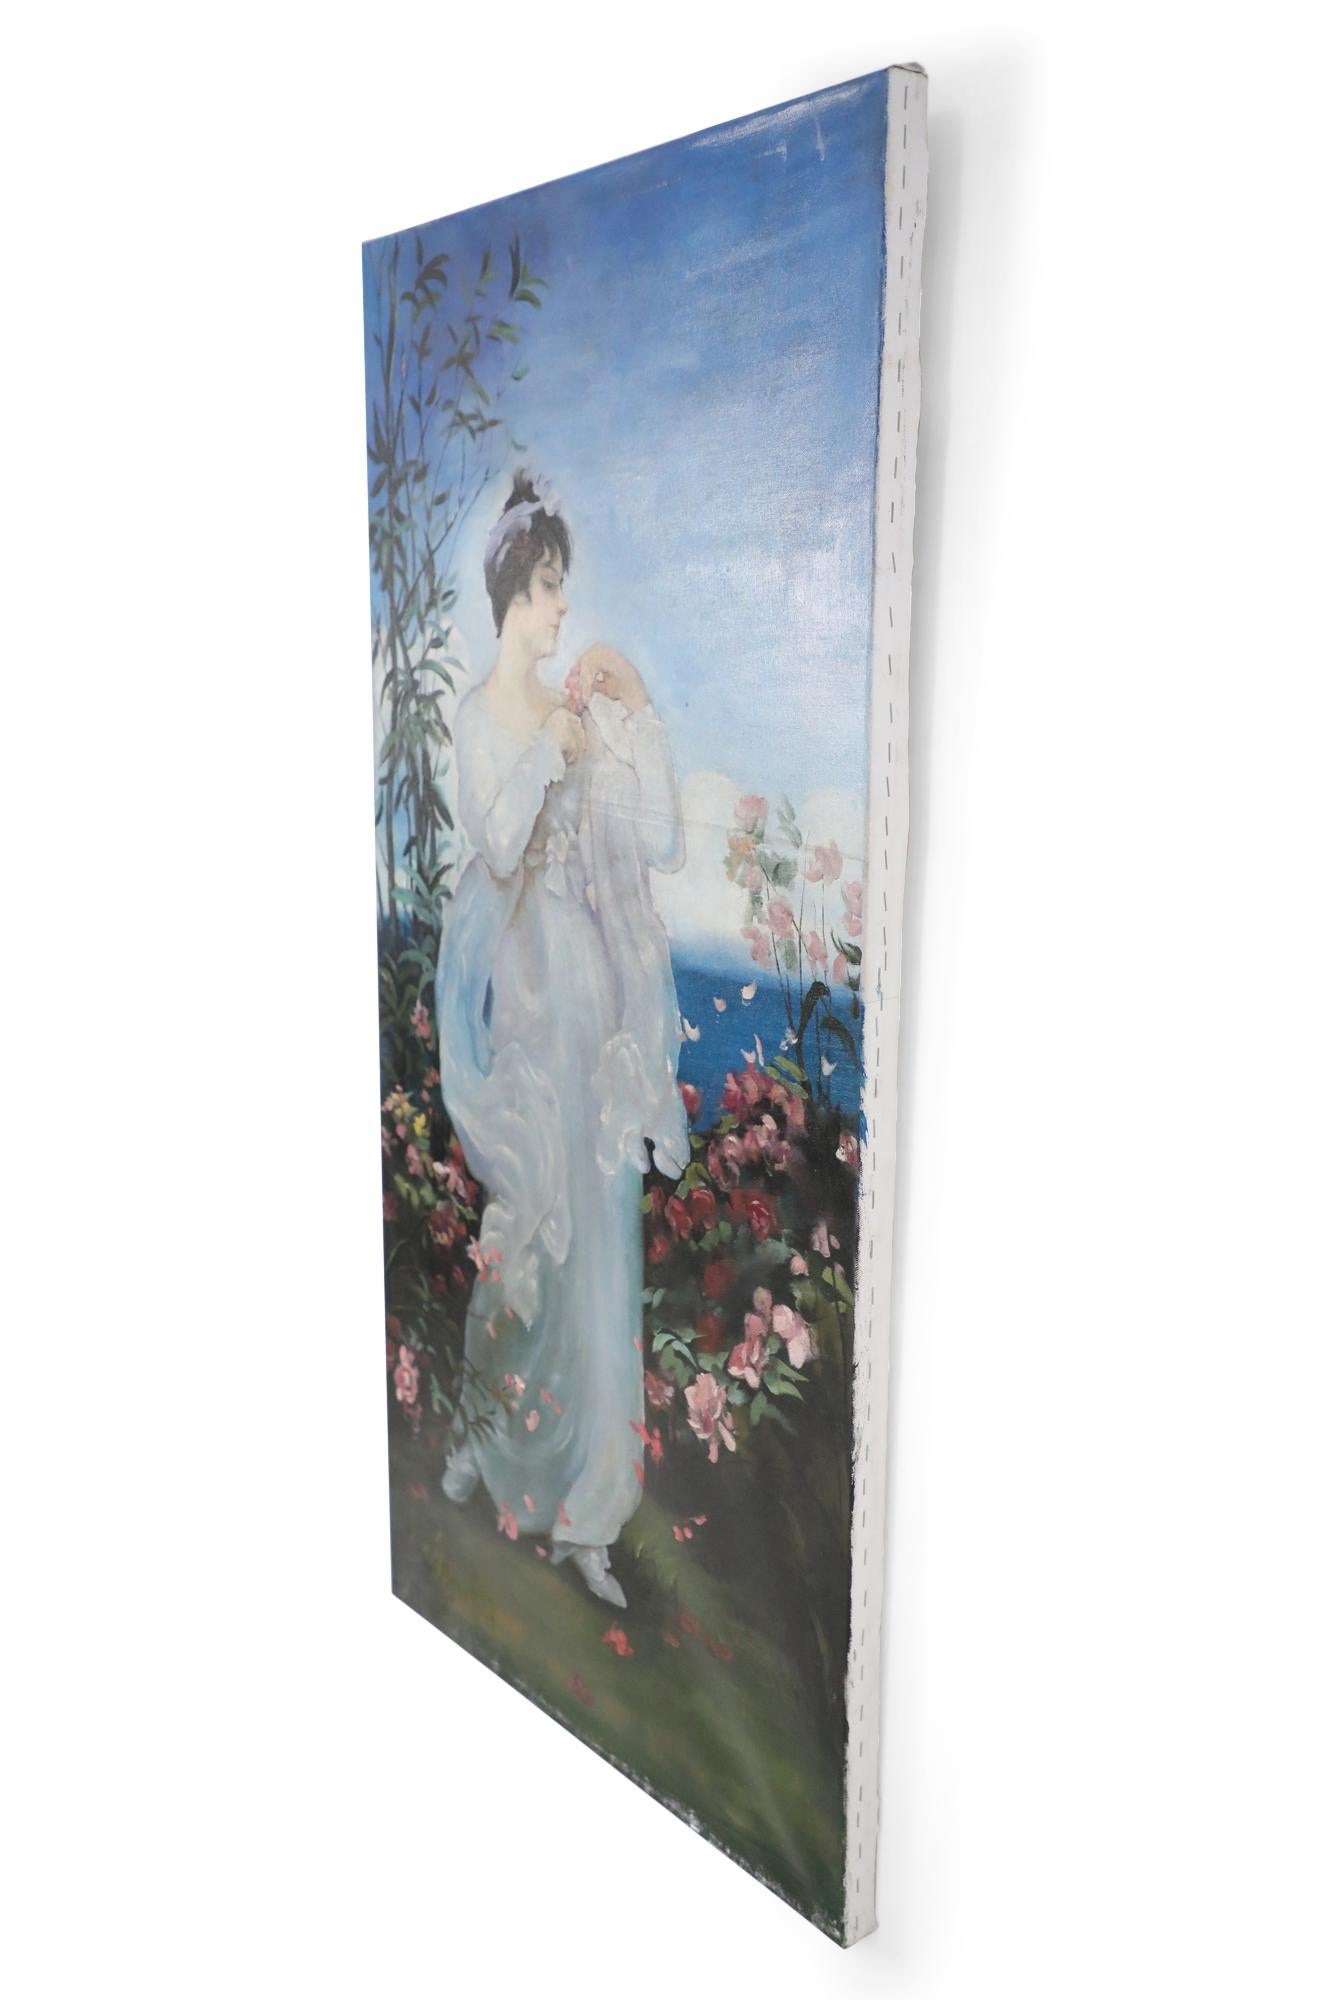 Vieille peinture à l'huile de style néoclassique (20e siècle) représentant une femme portant une robe blanche flottante dans un jardin rempli de roses roses, avec la mer et le ciel au loin. Peint sur une toile non encadrée.
         